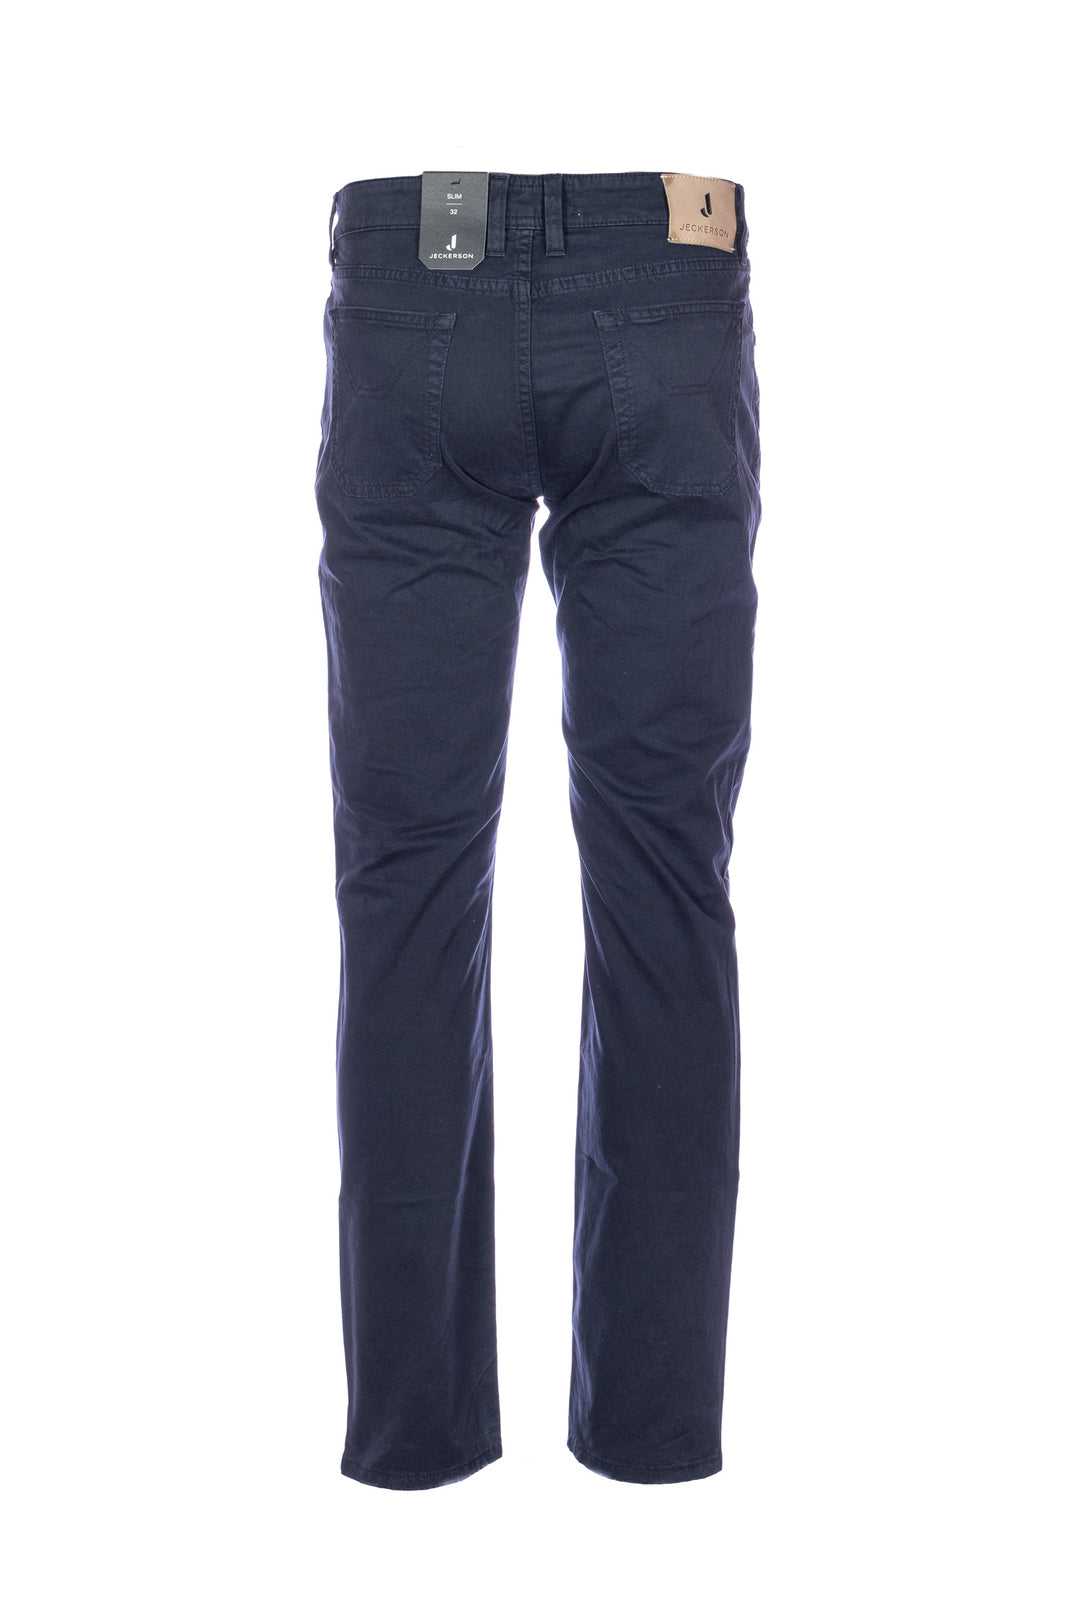 JECKERSON Pantalone slim 5 tasche “JORDAN” blu scuro in gabardina di cotone stretch - Mancinelli 1954